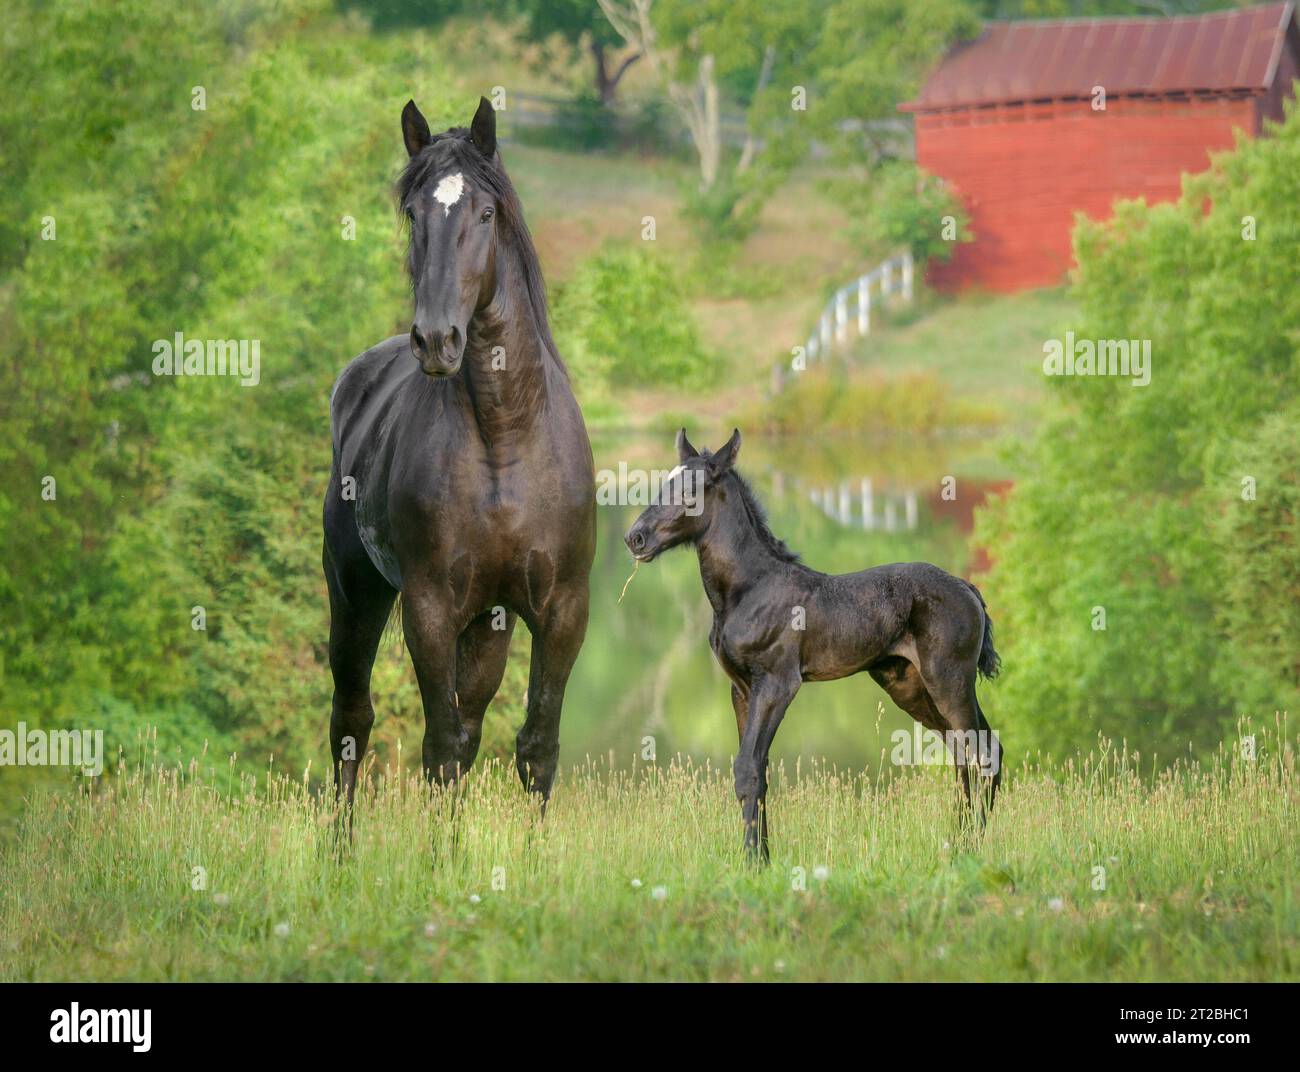 Percheron Draft Horse mare con potro recién nacido en campo por estanque con granero rojo Foto de stock